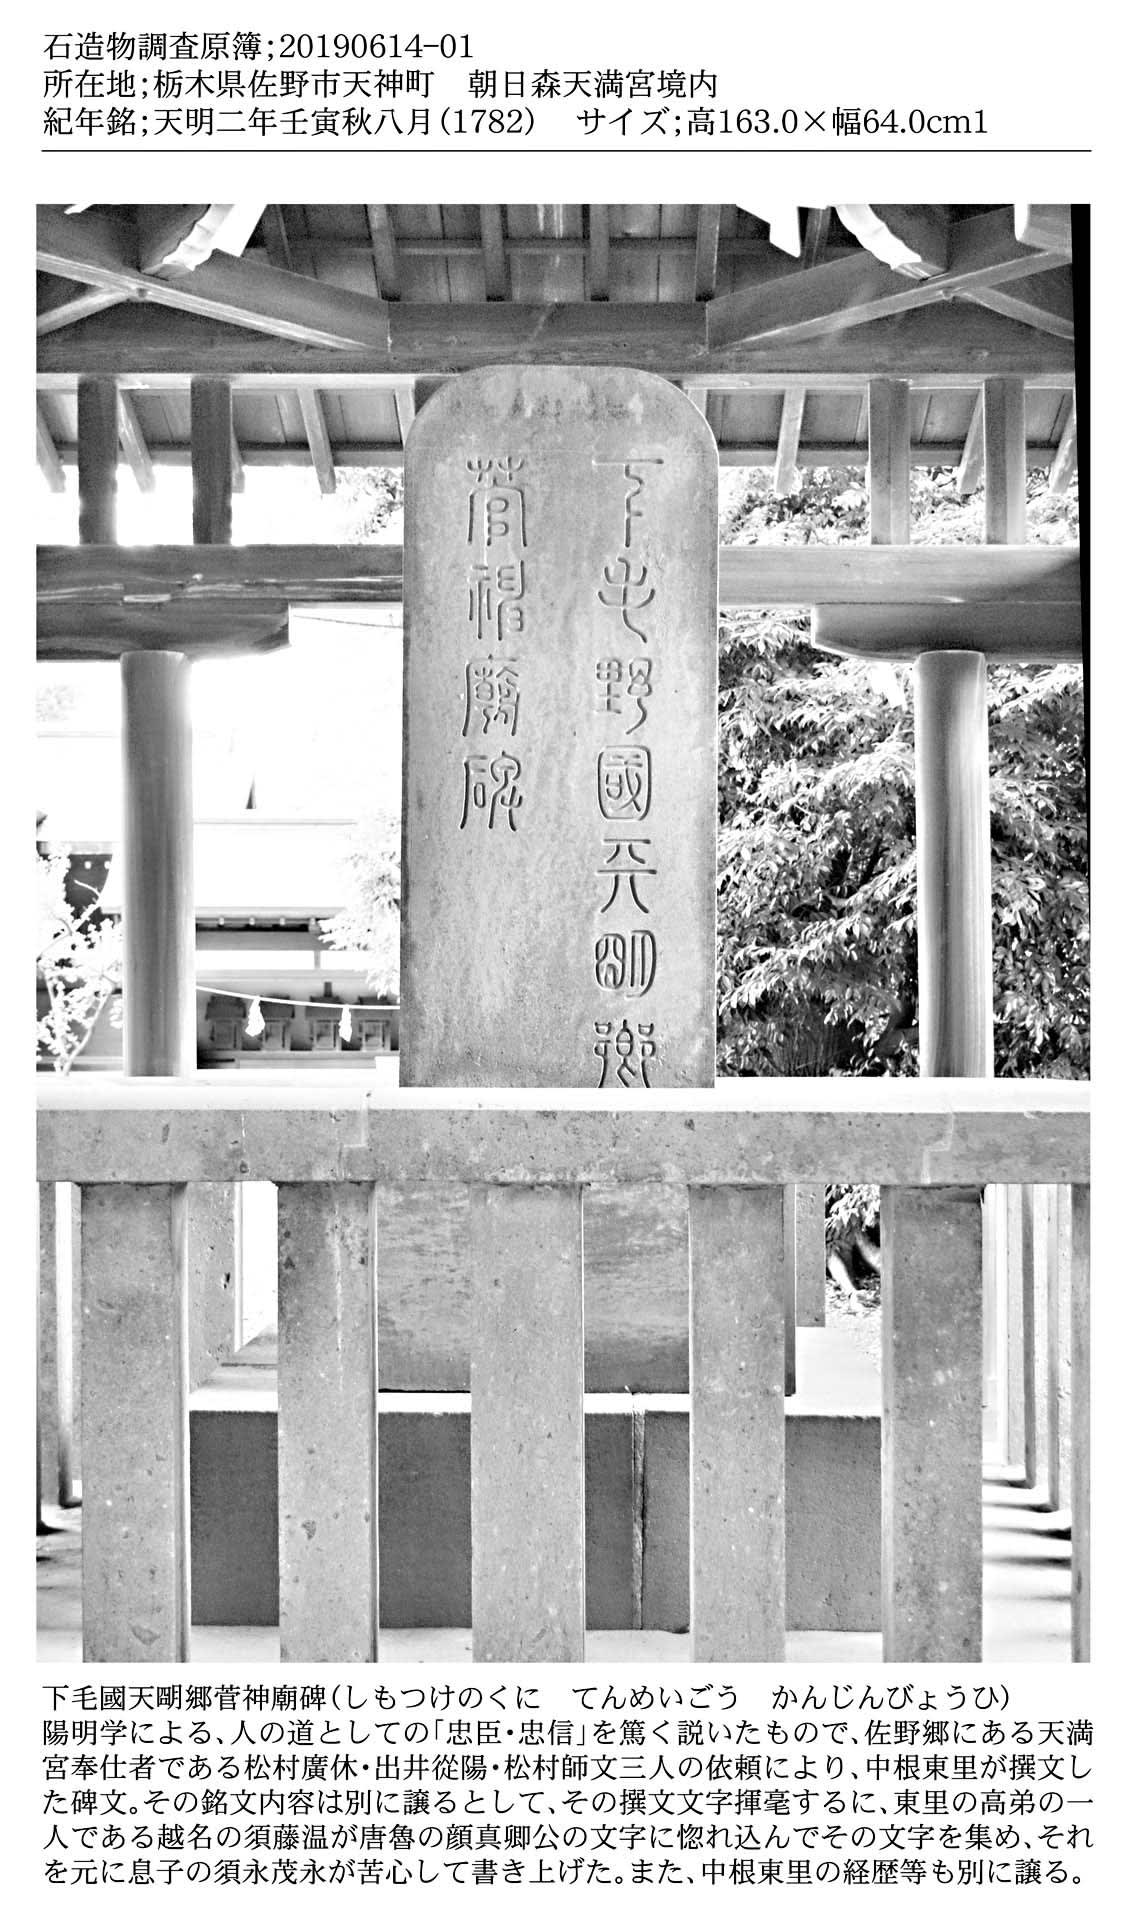 中根東里の菅神廟碑に関する石碑を1頁に纏めました 瀧澤龍雄による栃木県の石碑調査と石仏調査